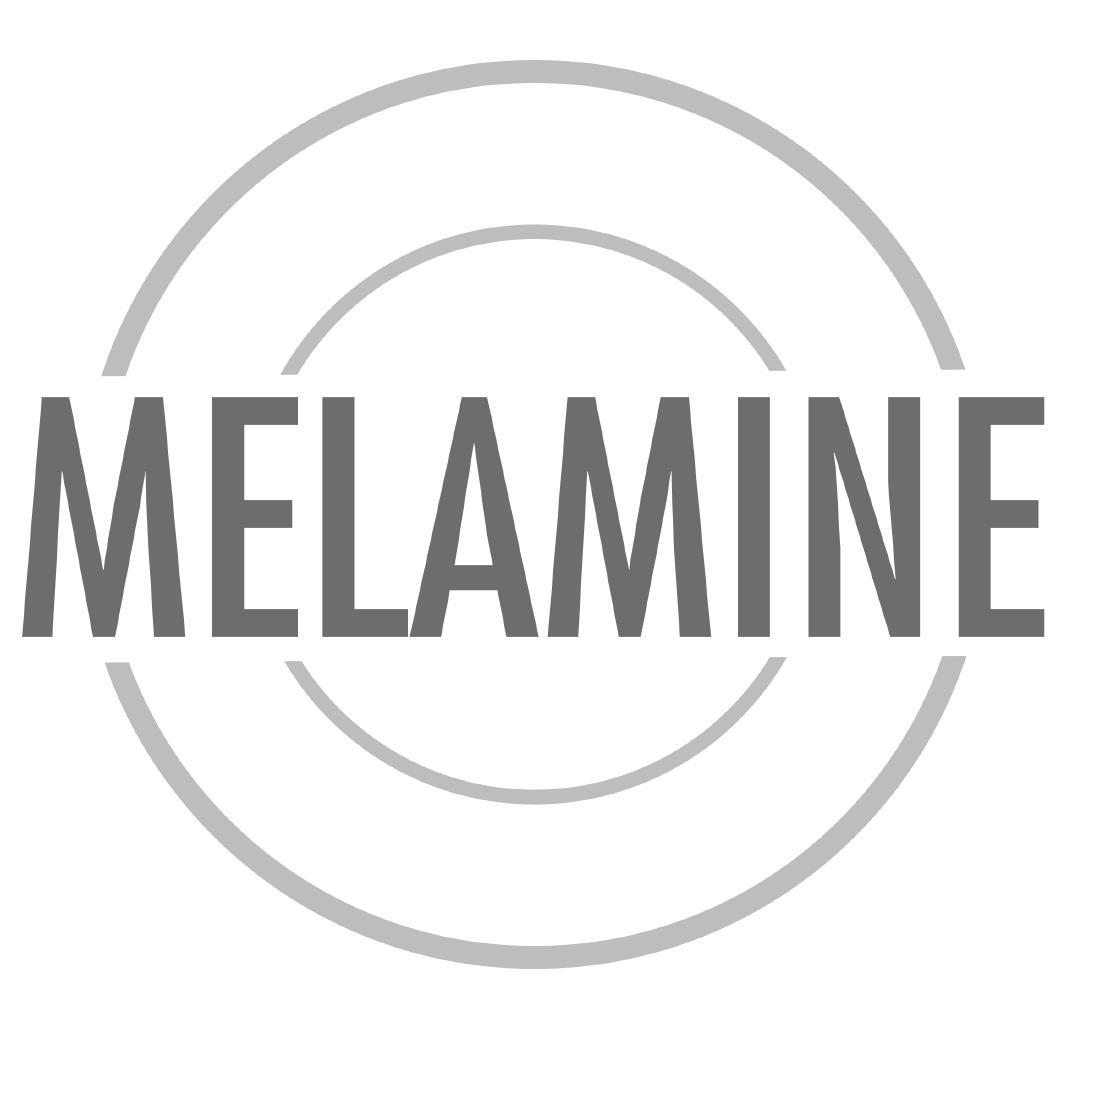 Melamine Blue Placemat - P348  - 2